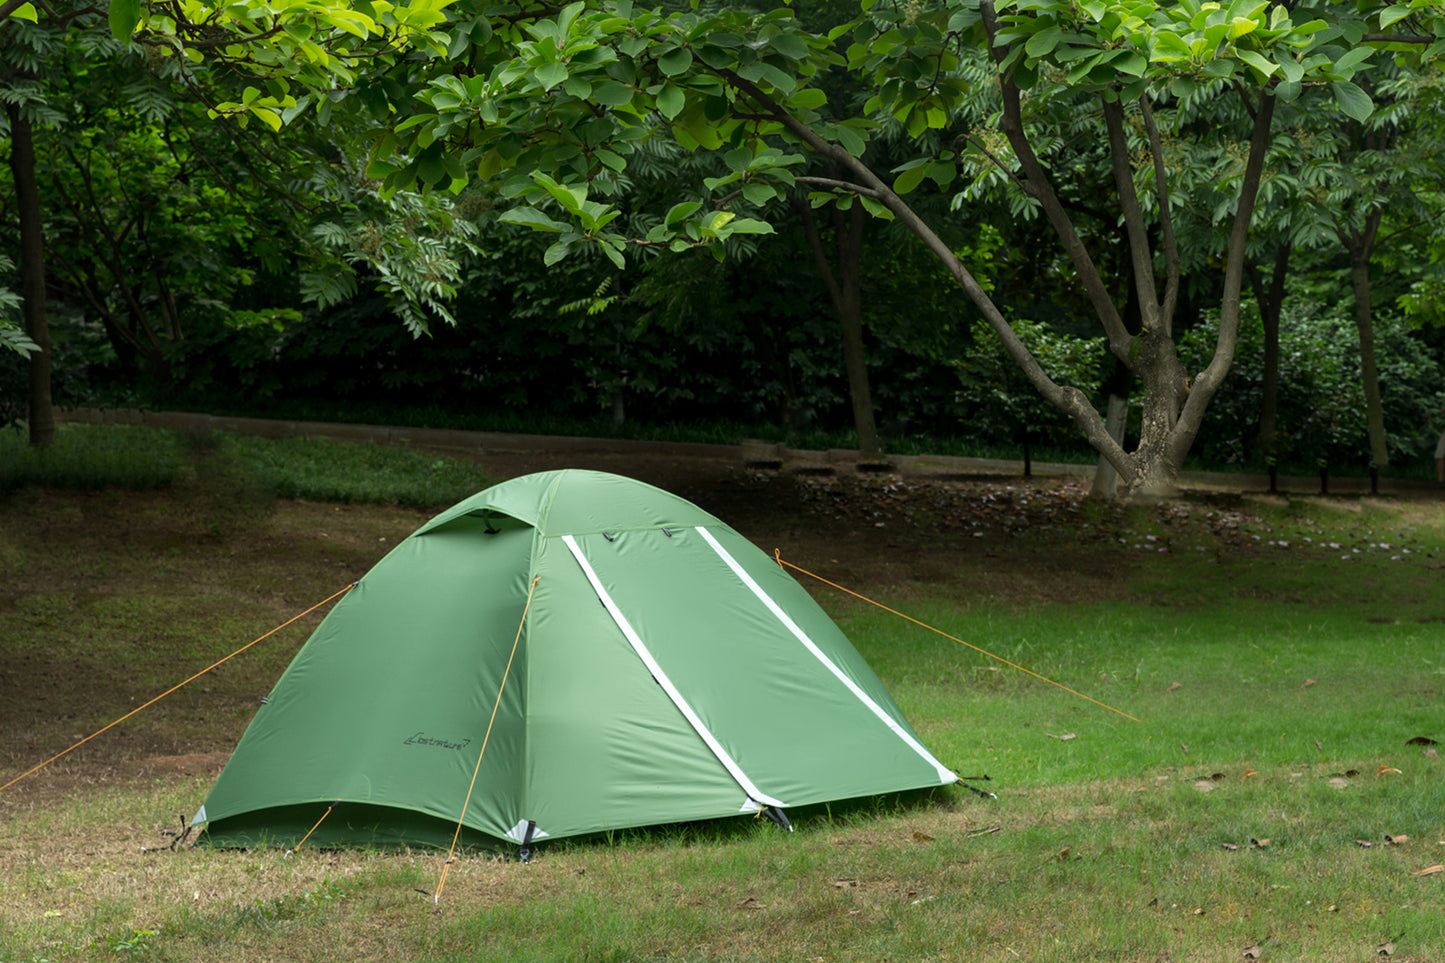 Clostnature 4-Man Lightweight Backpacking Tent - 3 Season Ultralight W